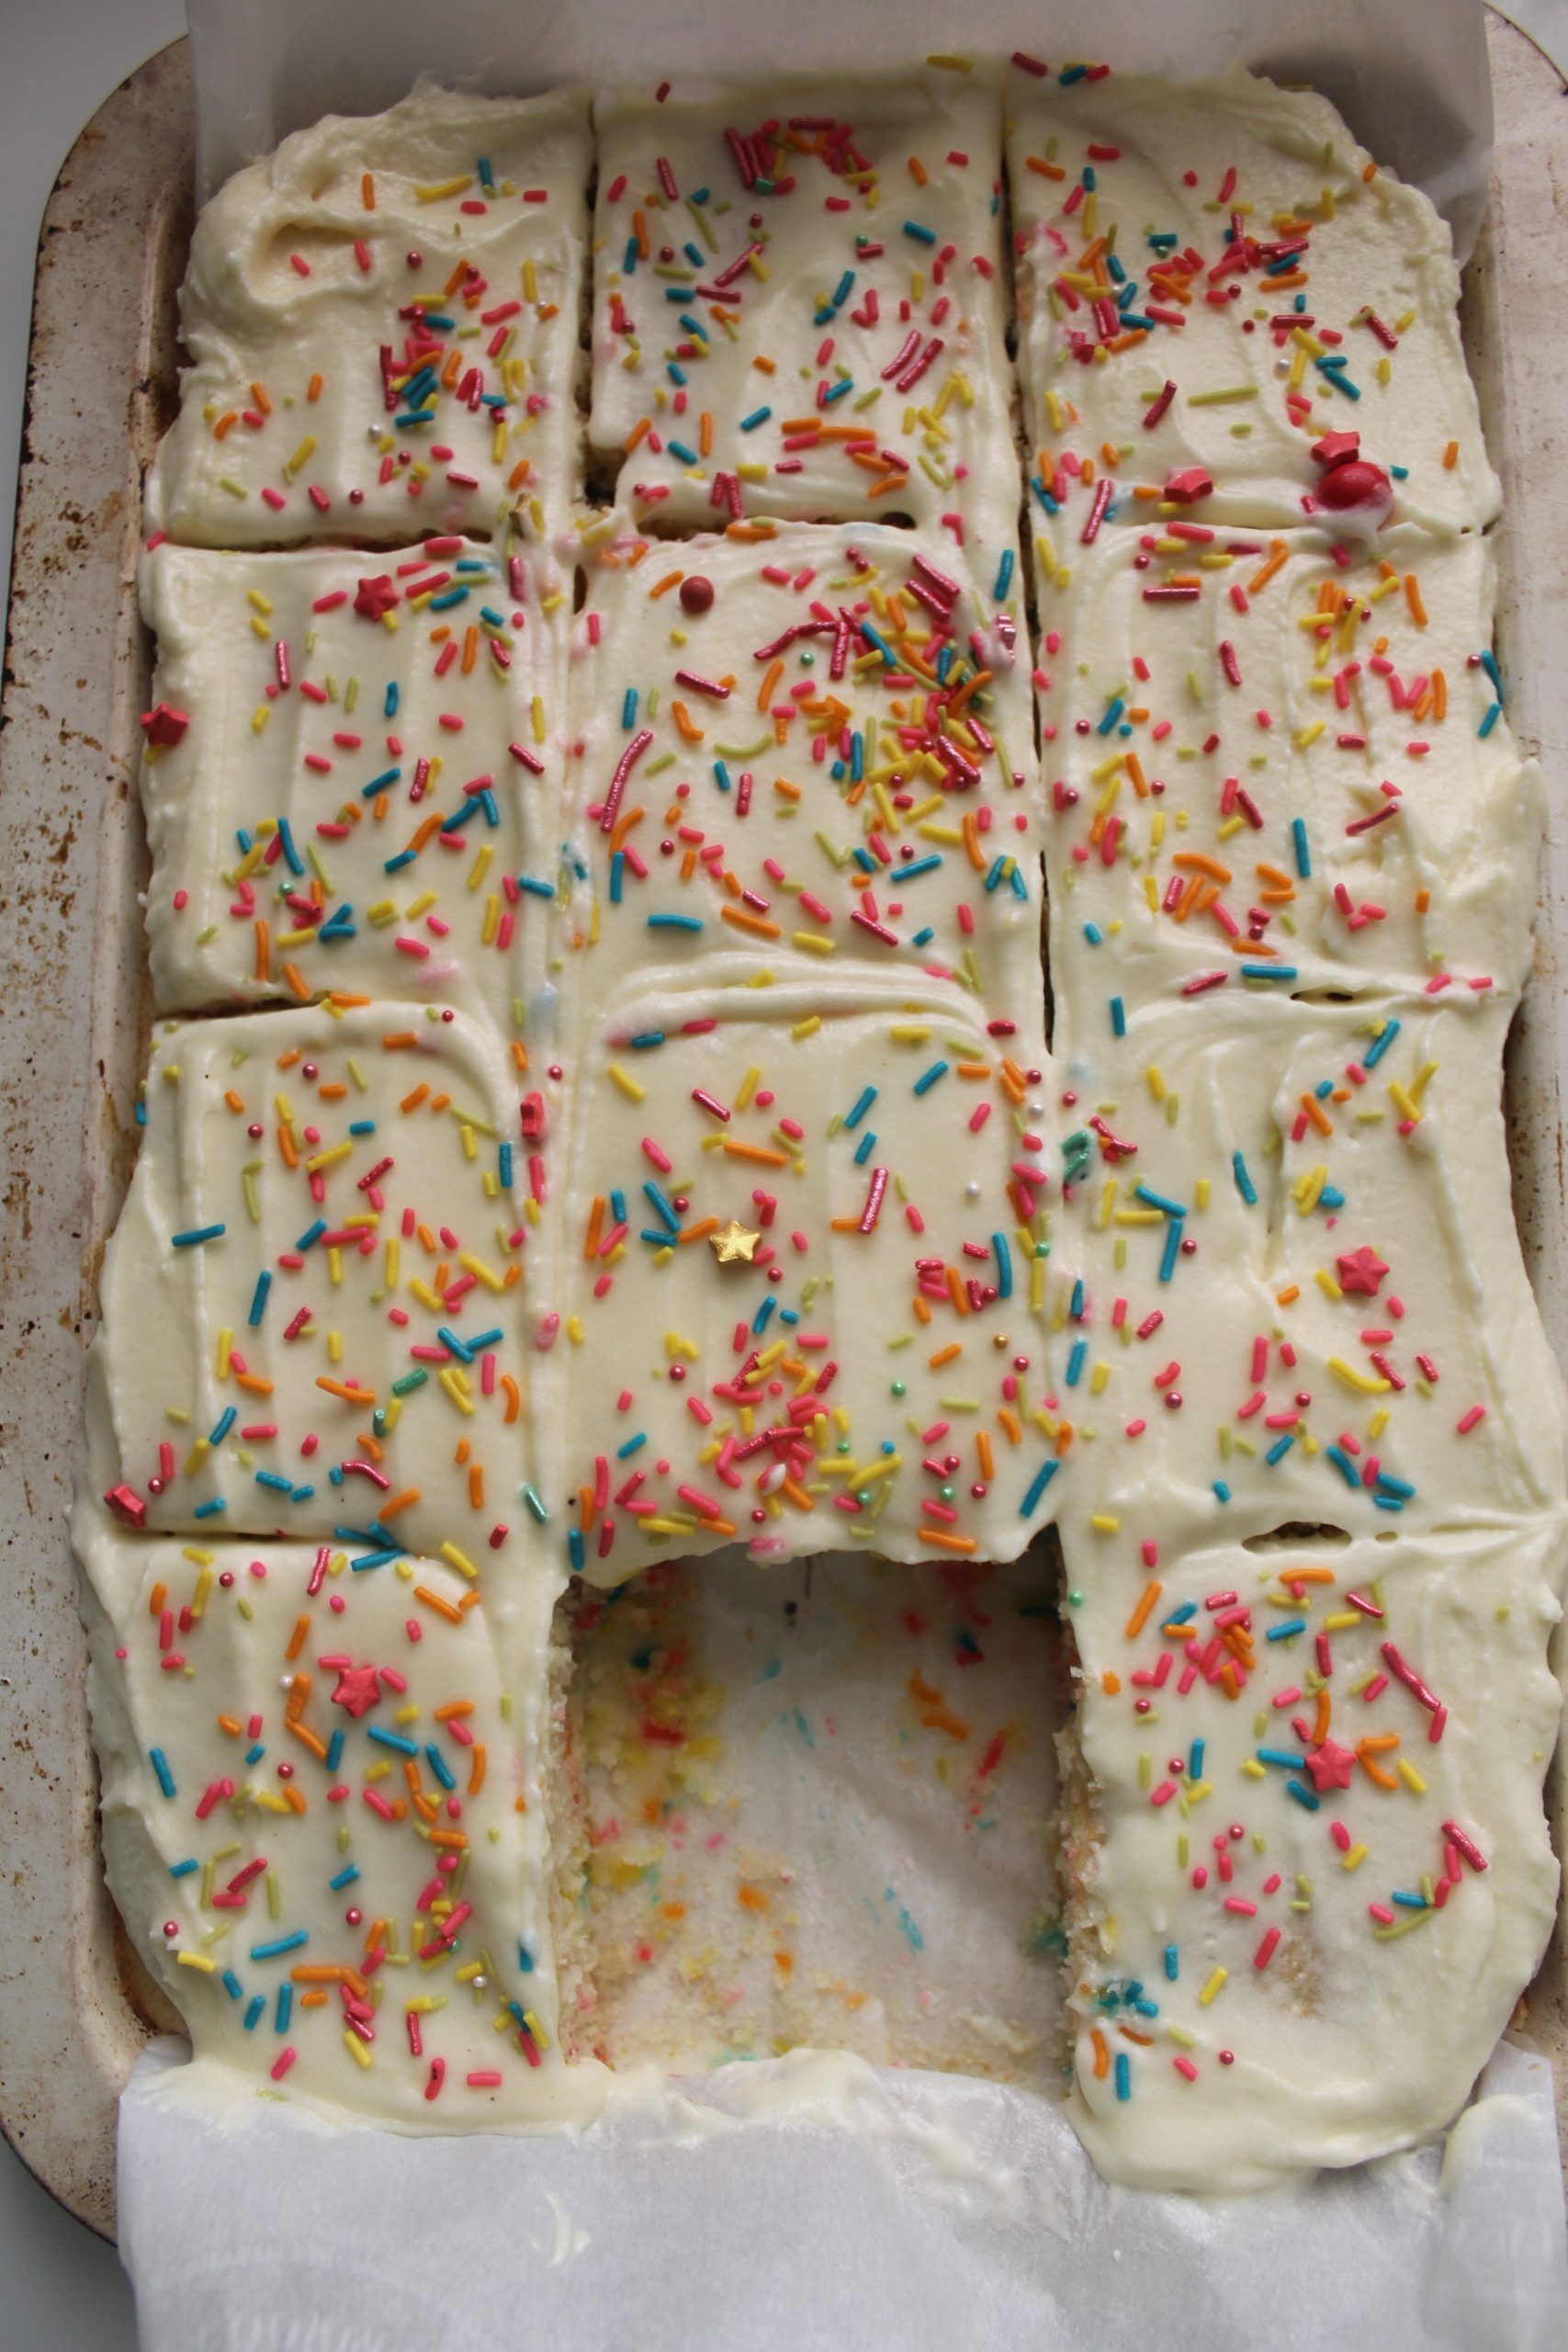 Vanilla Sheet Cake - The Toasty Kitchen